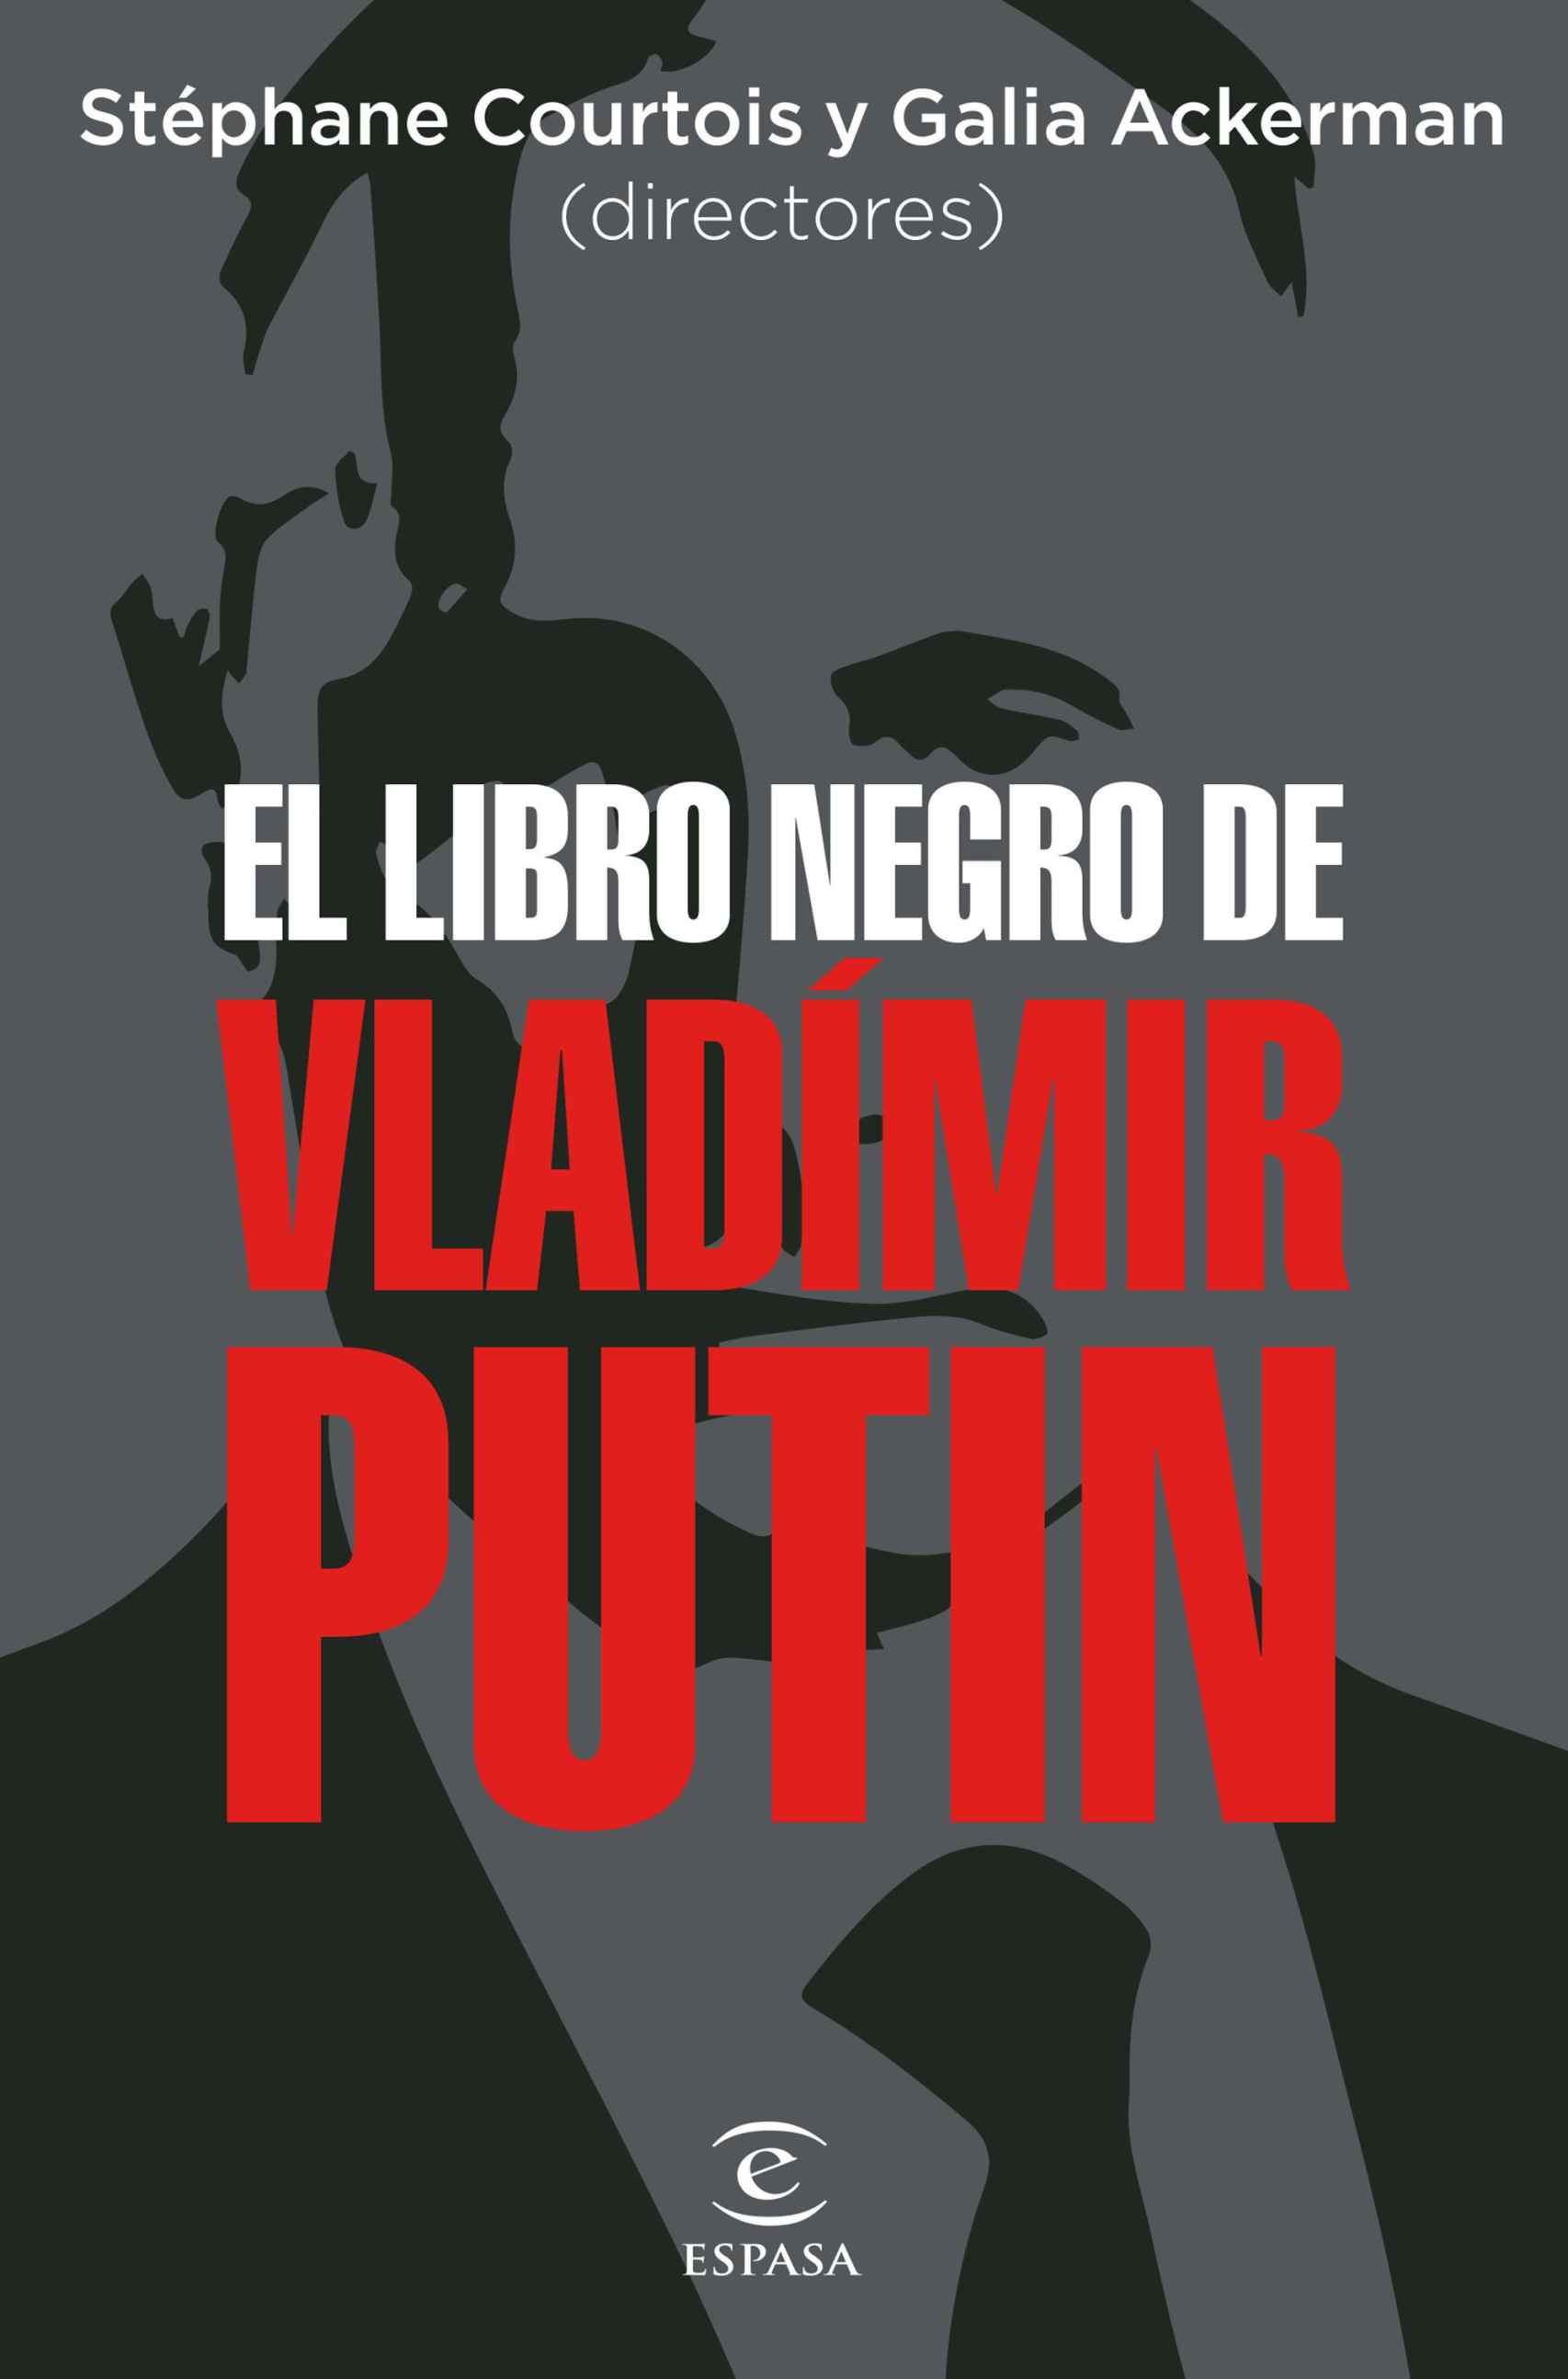 'El libro negro de Vladimir Putin', libro en el que Frattini participa como único autor español.